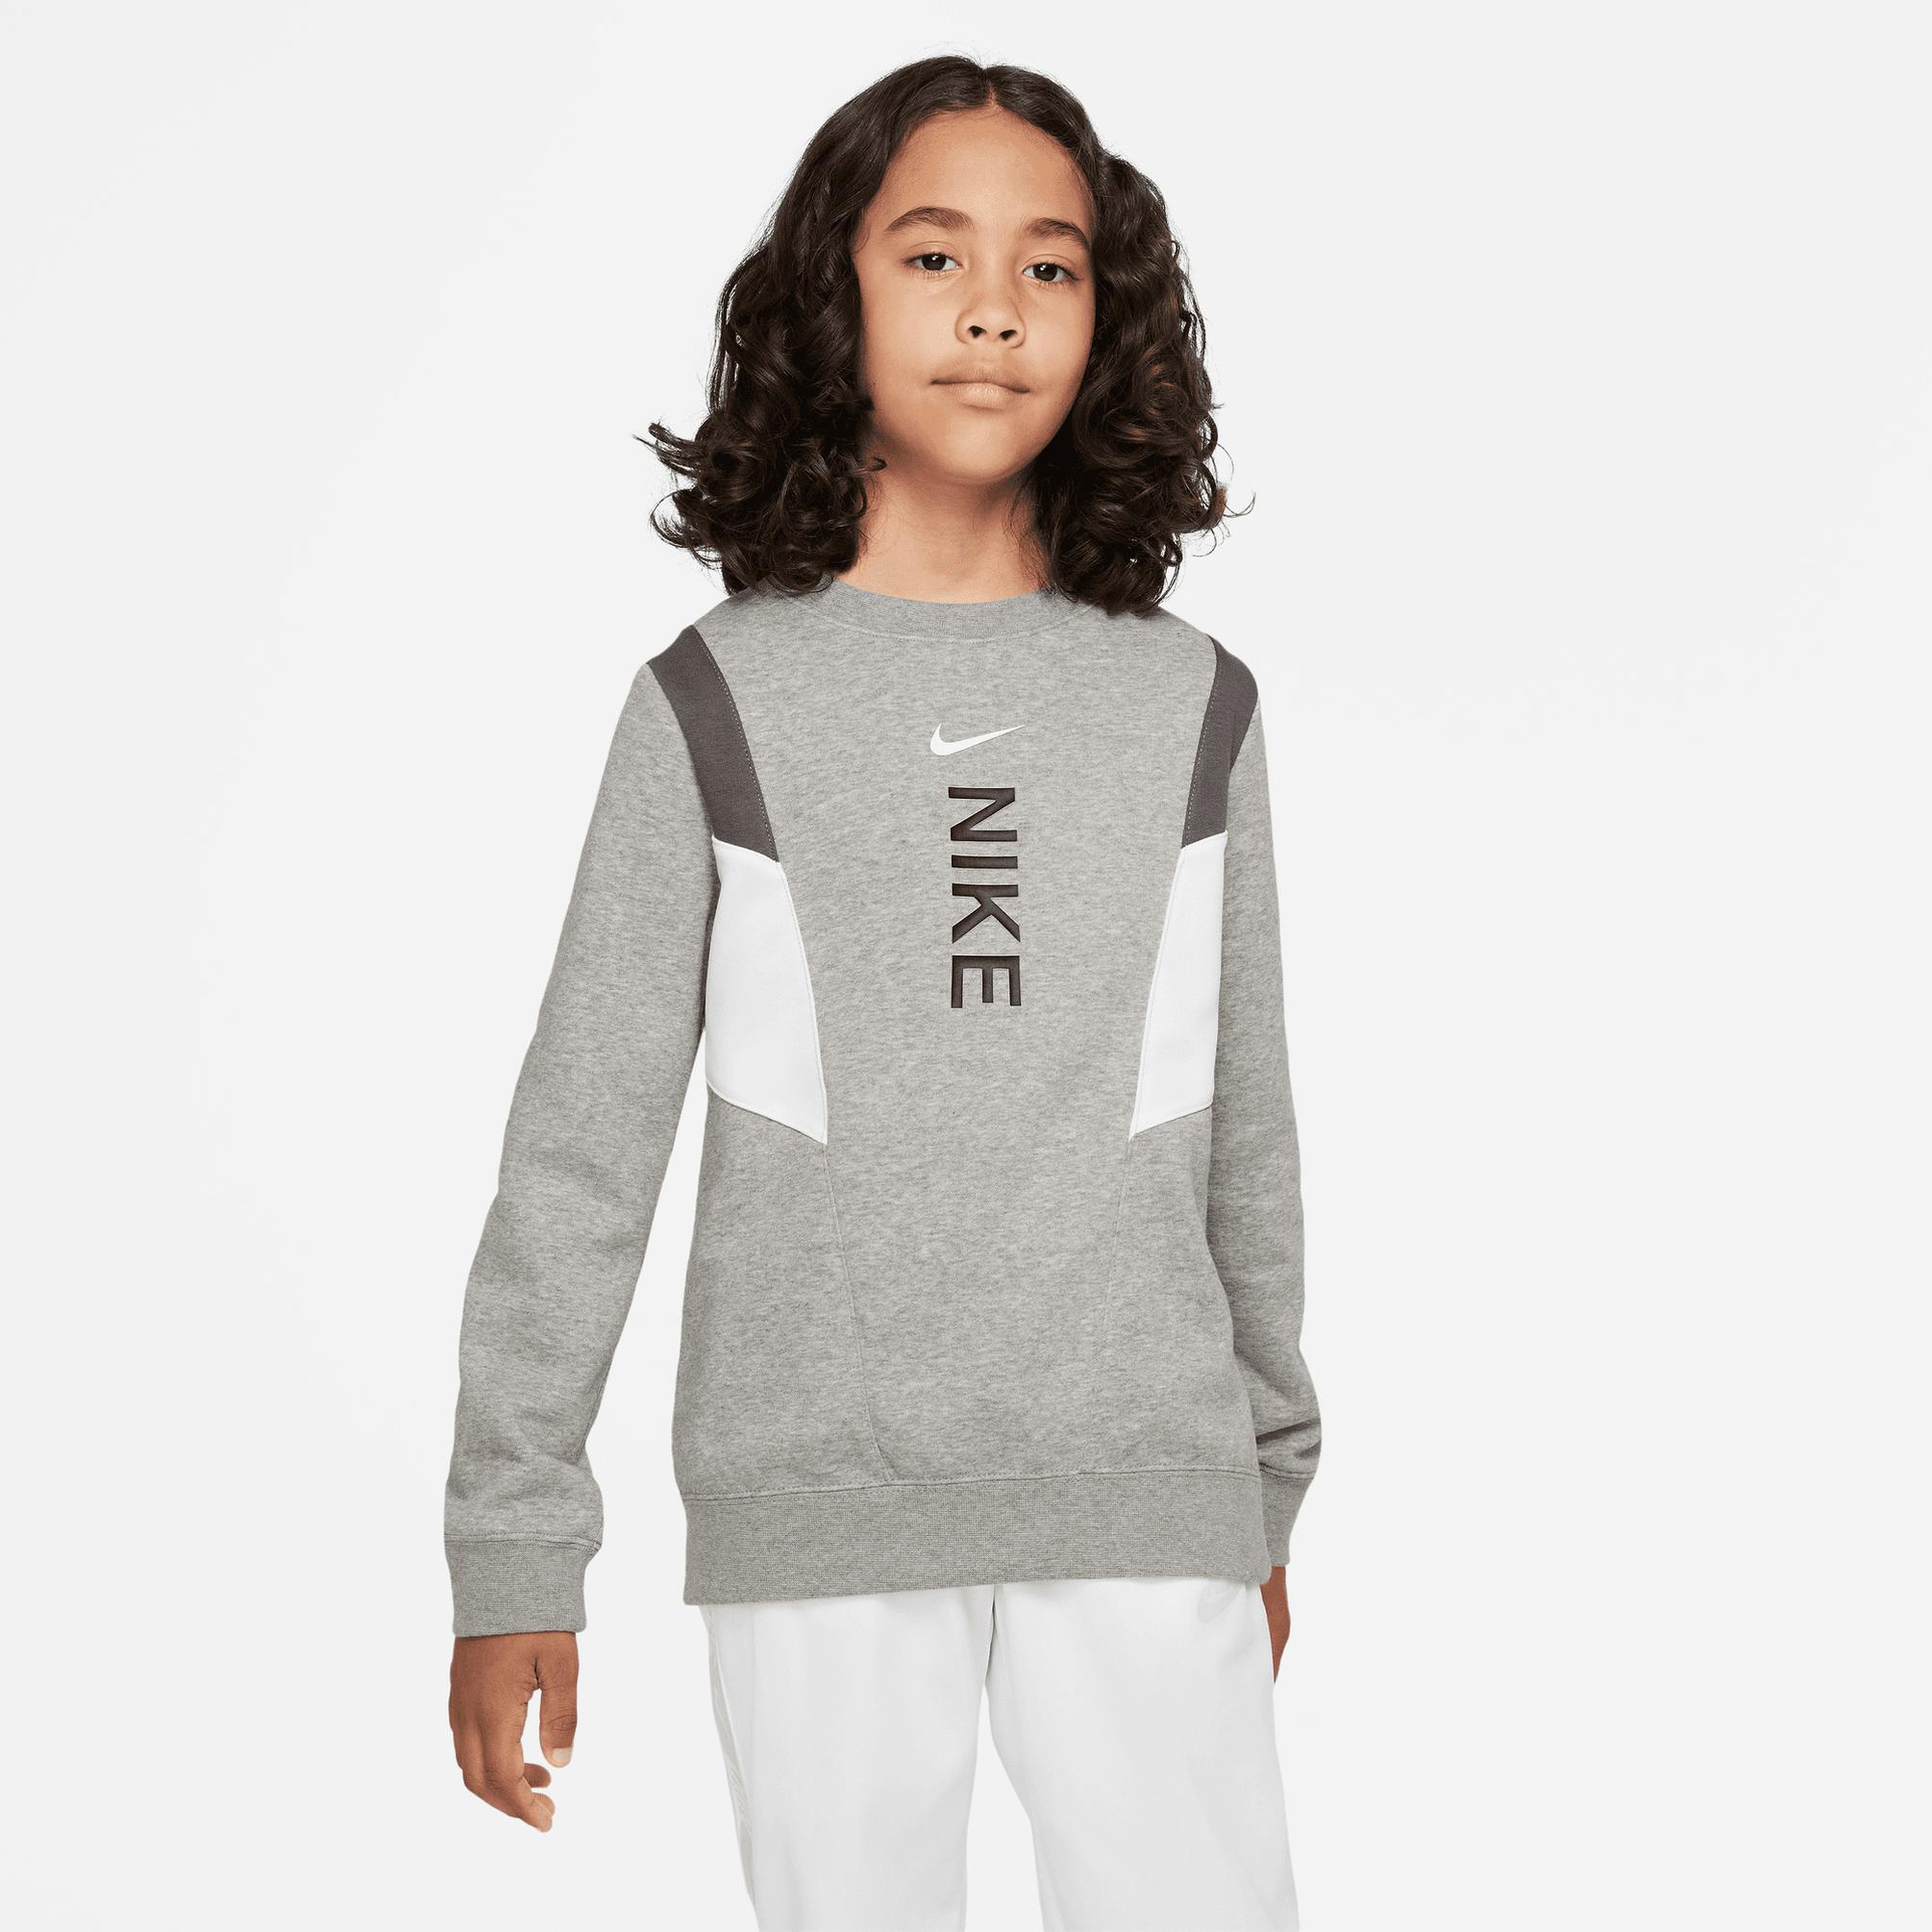  Nike Hybrid Fleece Çocuk Siyah/Gri/Gümüş Sweatshirt